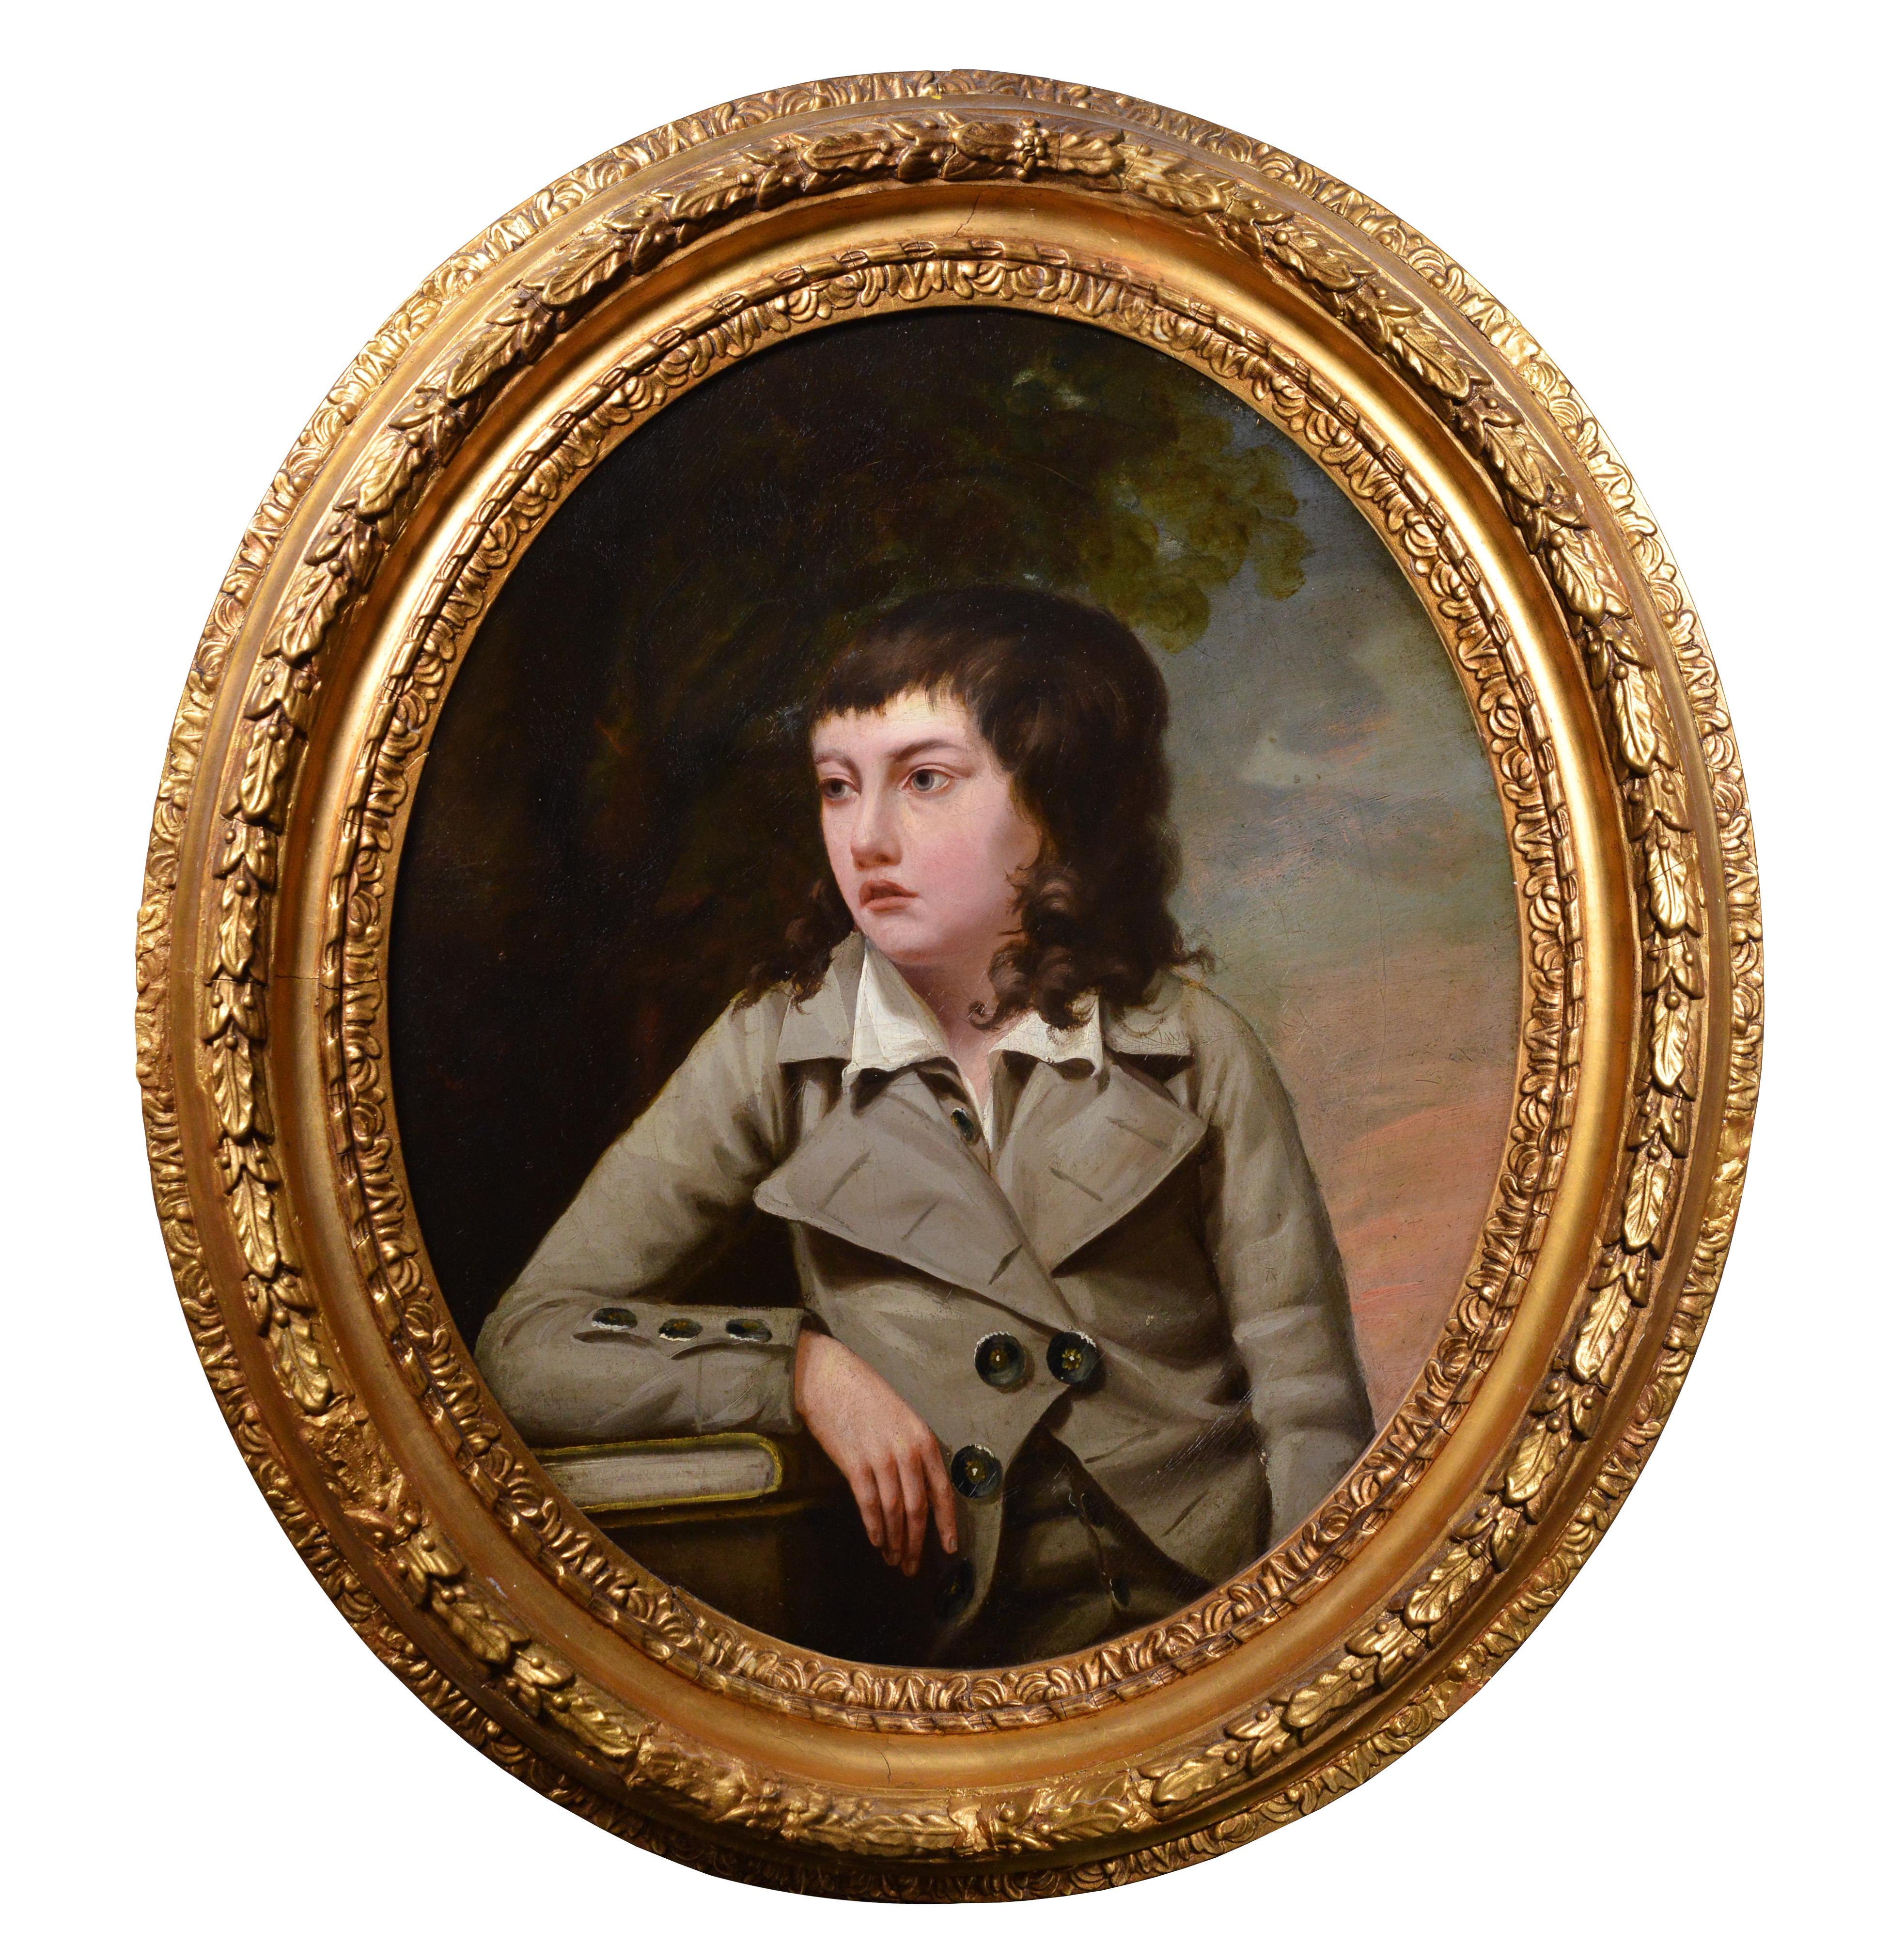 Portrait Painting Attributed to John Opie R.A - Portrait d'un adolescent étudiant, peinture à l'huile du 18e siècle par un maître britannique